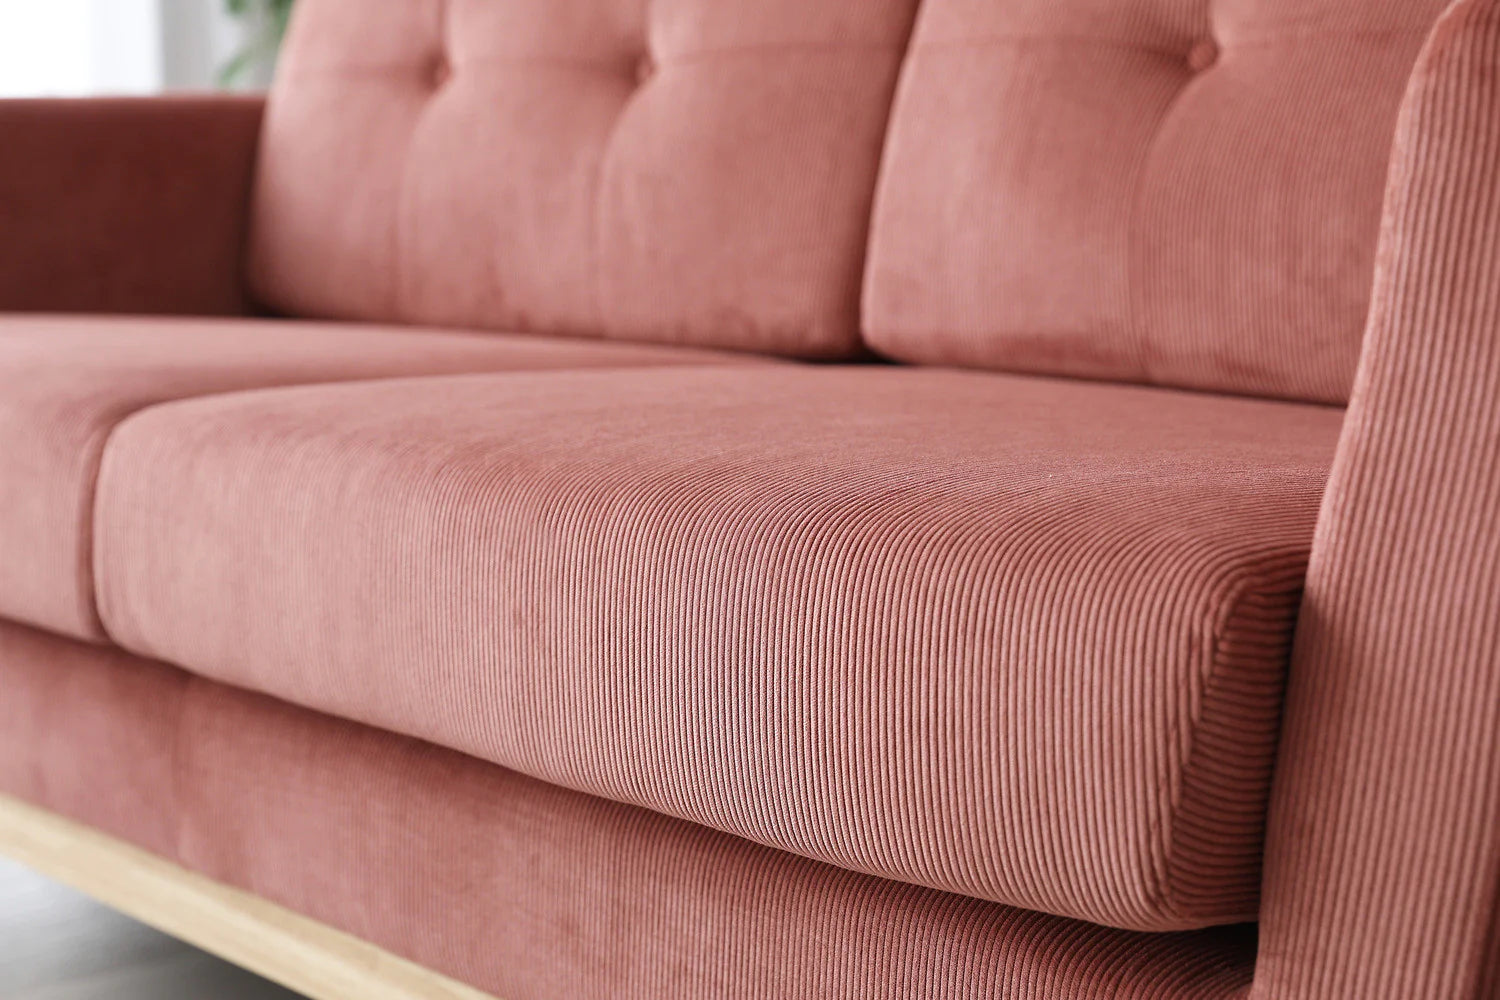 Elige entre 5 ESPUMAS diferentes para tu sofá 